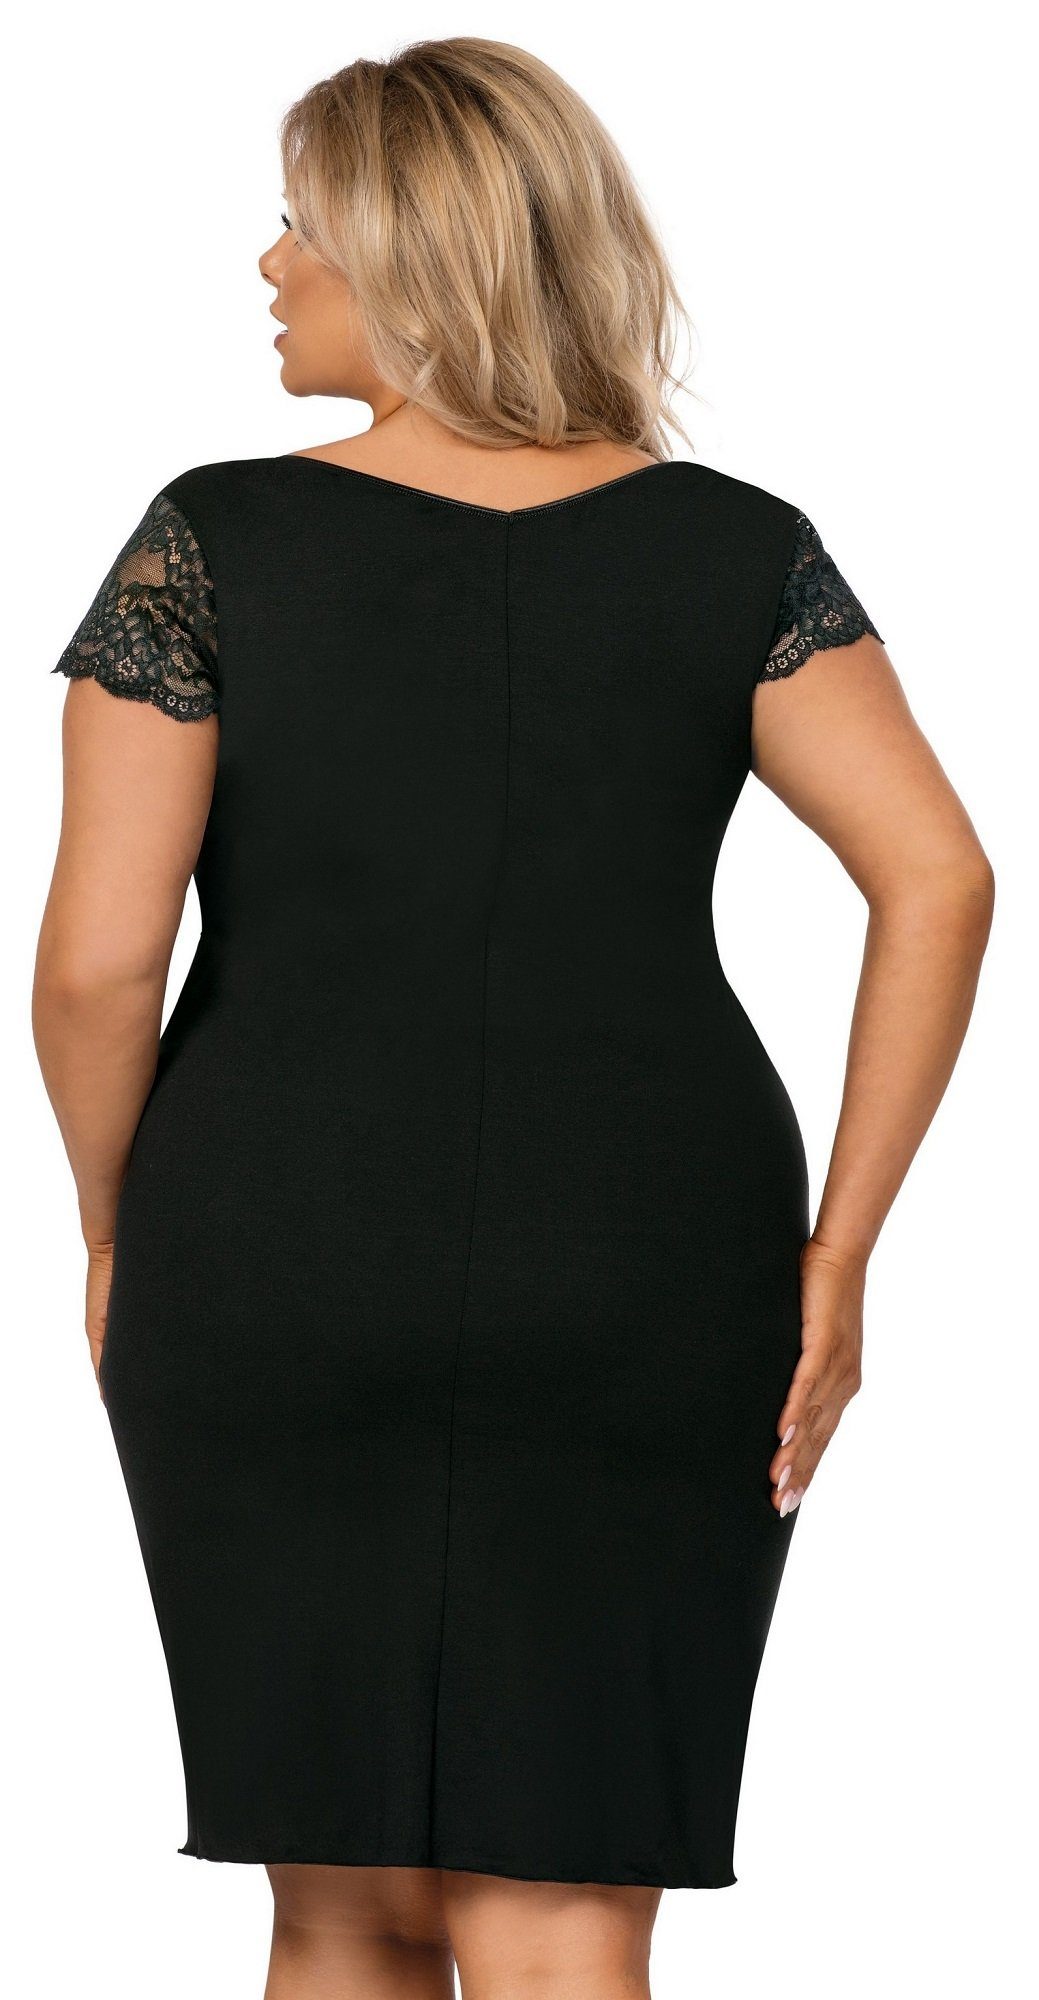 Donna Nachthemd im Sanduhr-Schnitt - schwarz betont Linien, weibliche plus size